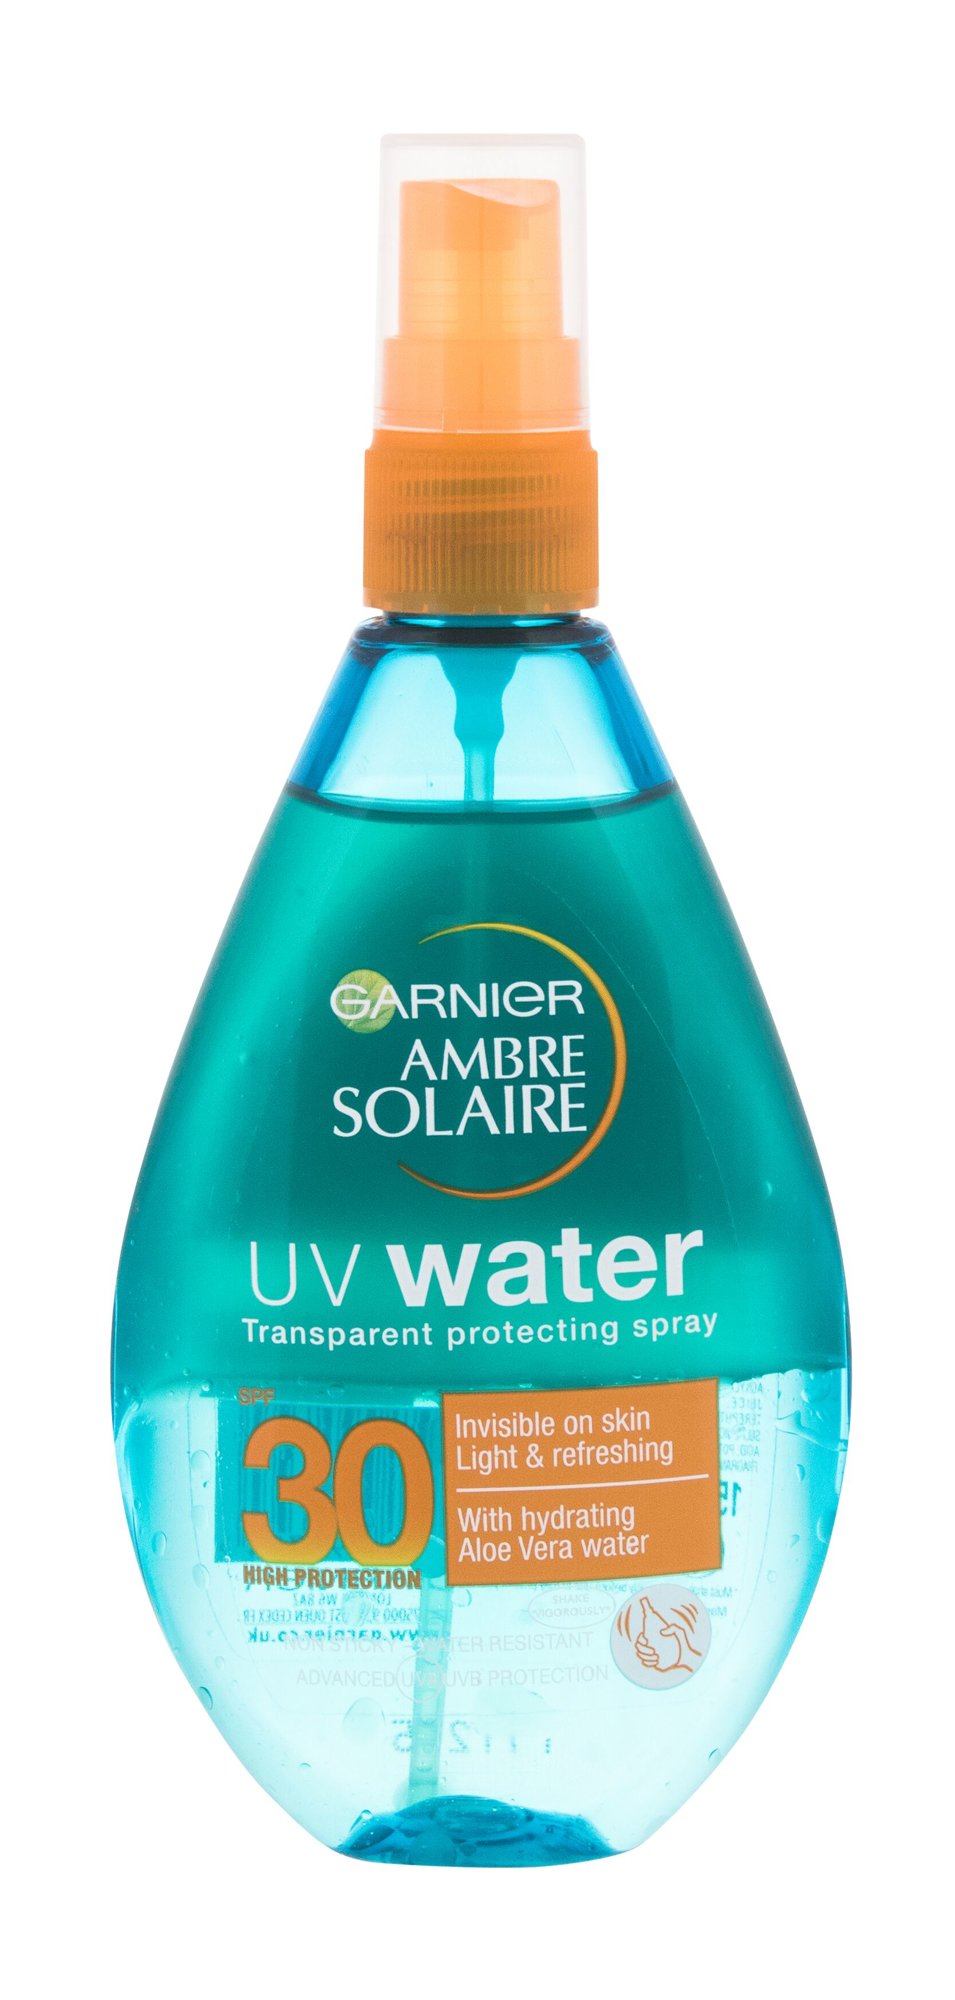 Garnier Ambre Solaire UV Water įdegio losjonas